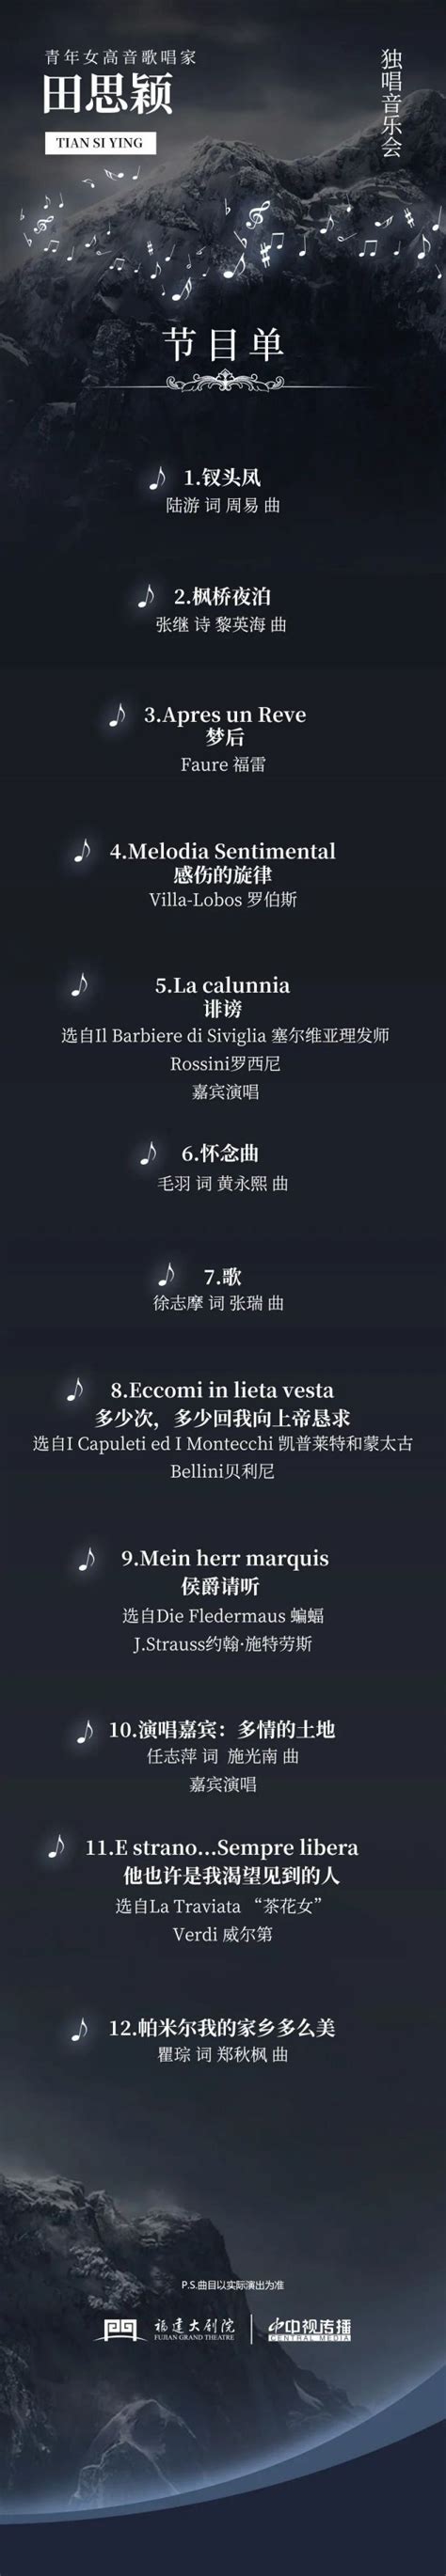 2020田佳鑫郑州音乐会演出详情（时间、地点、票价）一览-黄河票务网